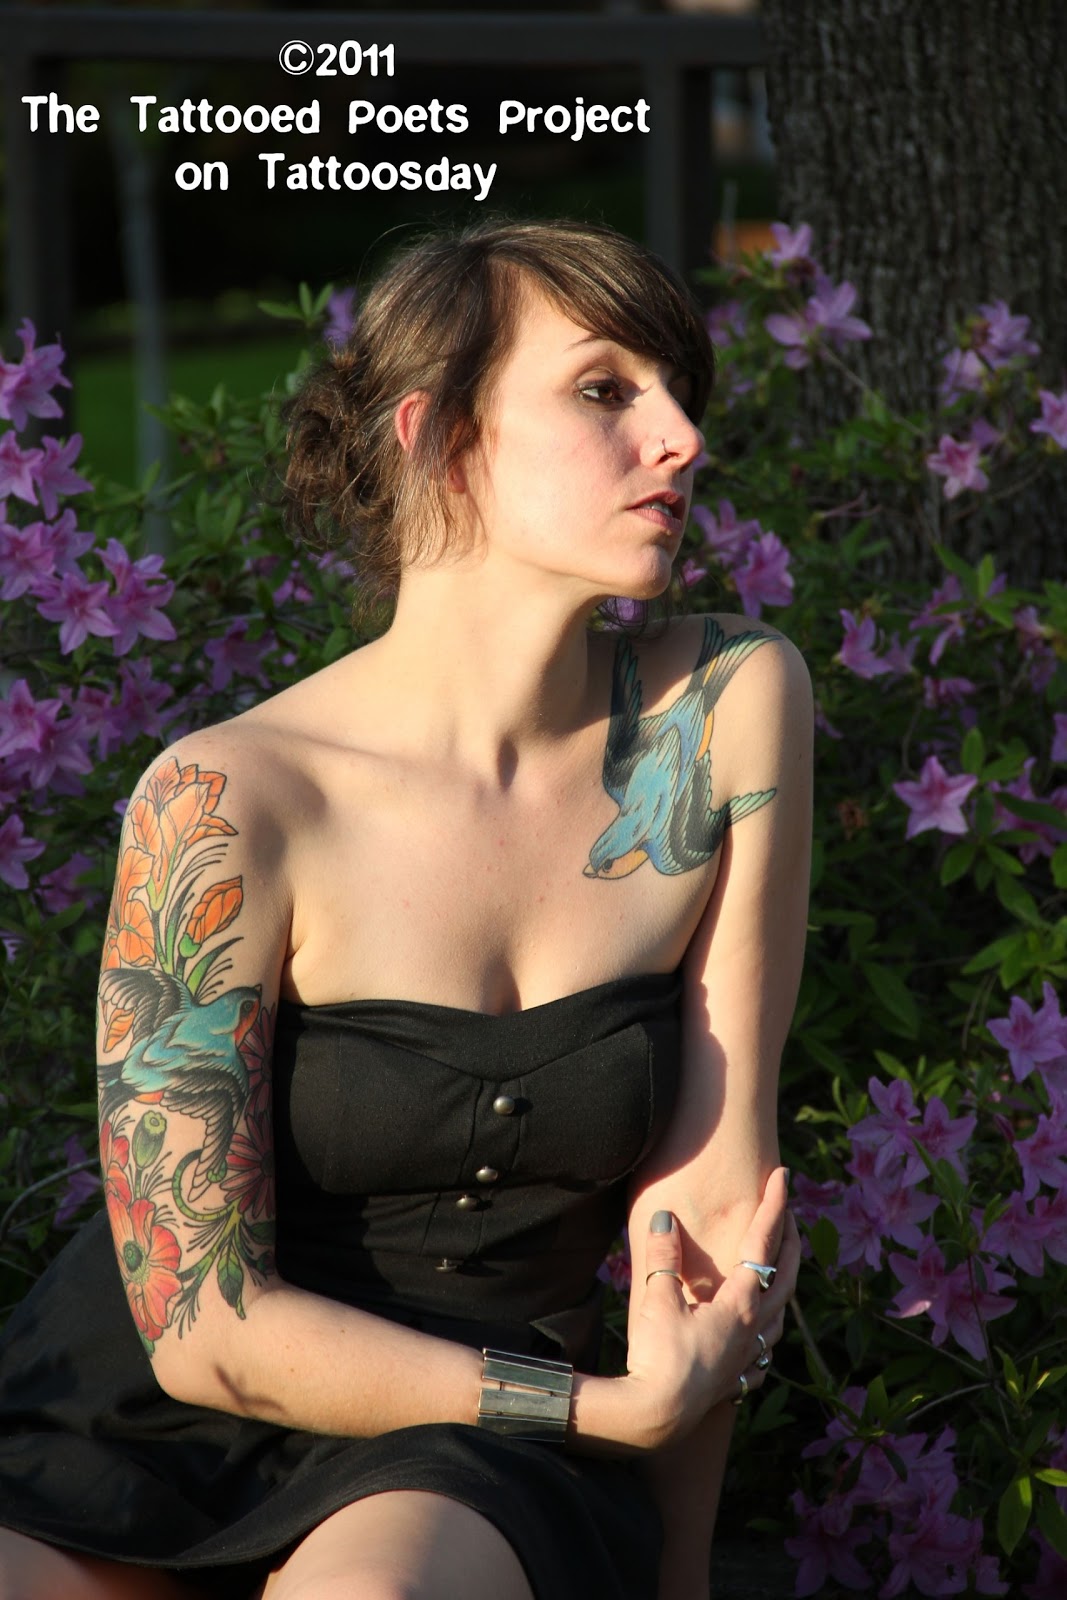 https://blogger.googleusercontent.com/img/b/R29vZ2xl/AVvXsEh_YnkpjZk-nqZ15GGbl94zzG0KajwihI-X464iswNuZZzcvt3MQx2aukKp8tjcna7eDSGXXJQFxMZGHFGwLqRt16cIW3WywBSab2f8Fn1Cwq4Qwx9tpE65wuKb8CDxlBy6tqSmpub8P80/s1600/Laura_white_tattoo.jpg